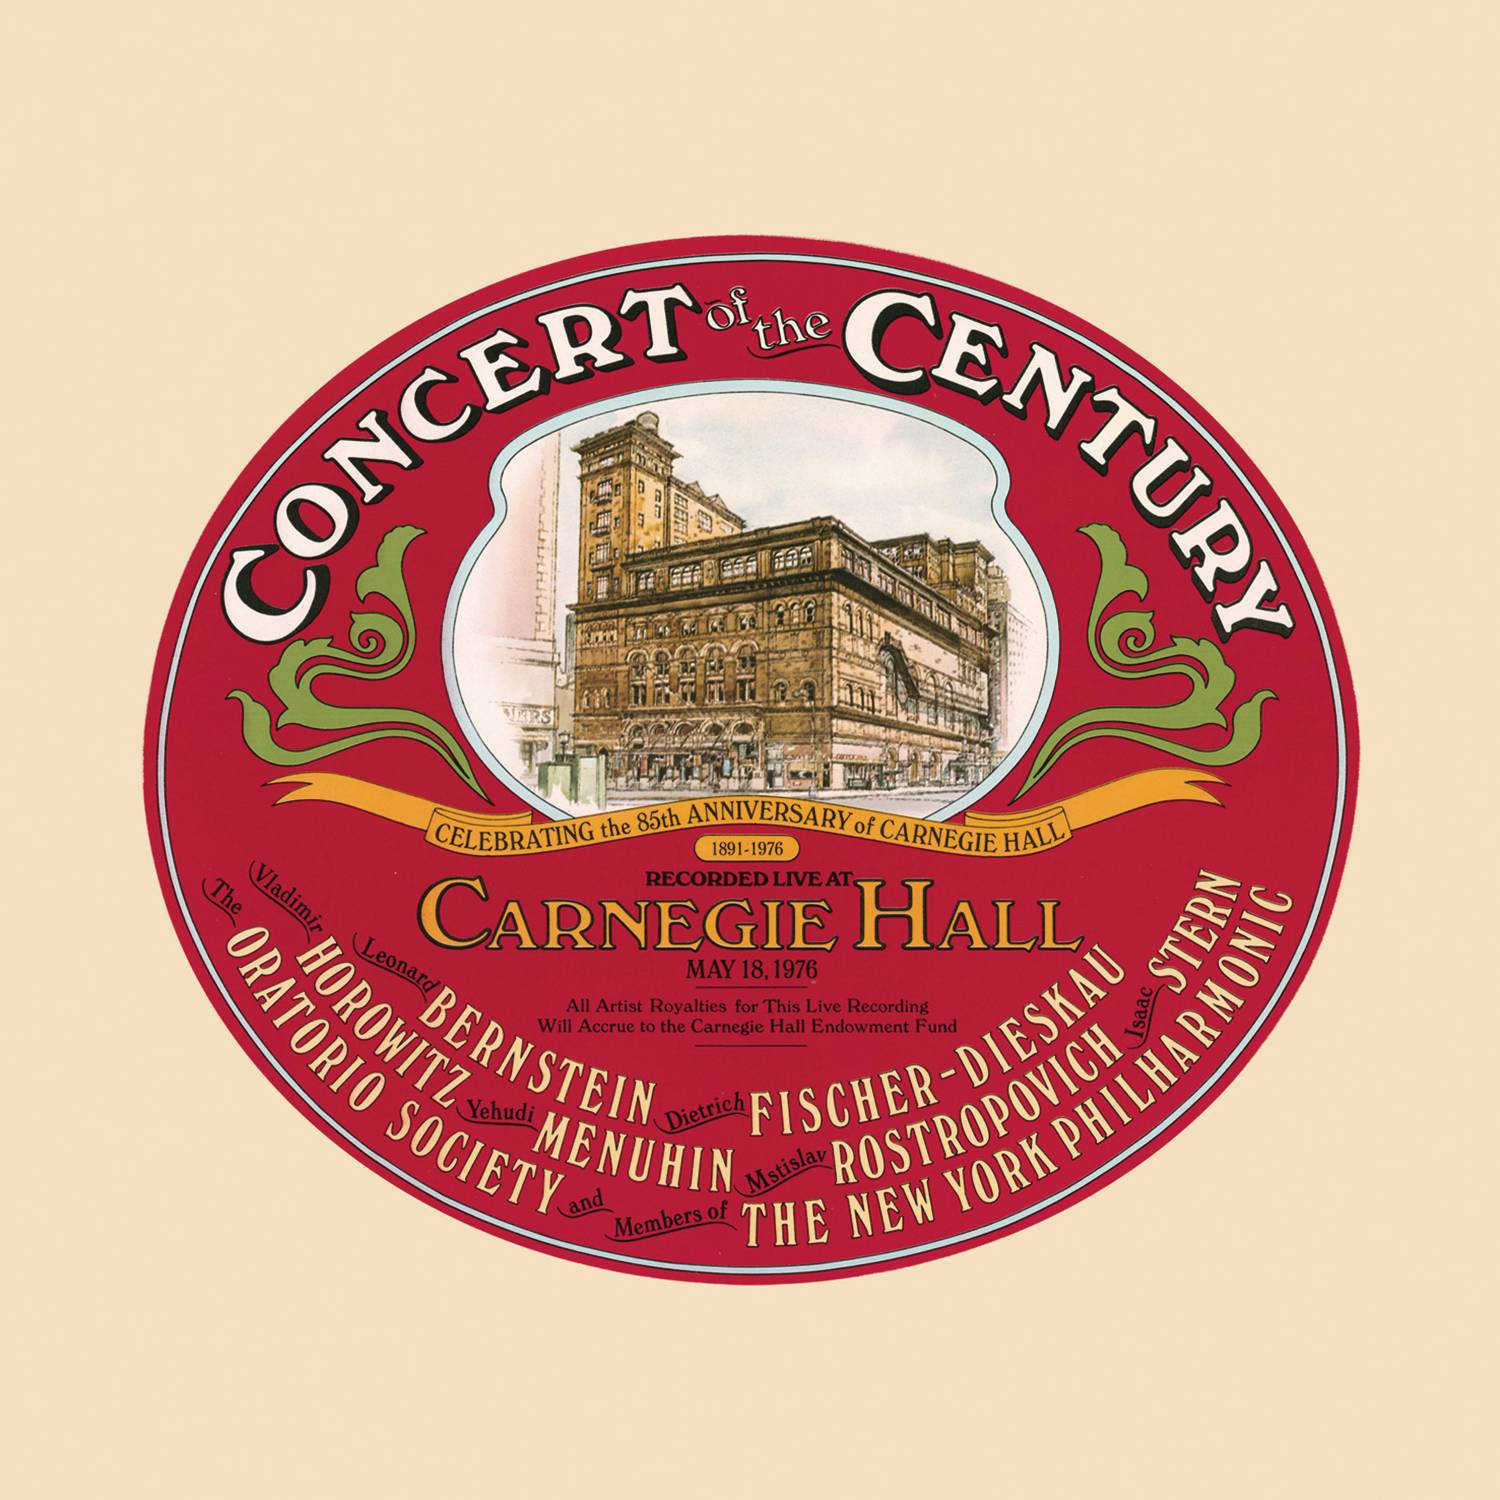 Concert of the Century专辑